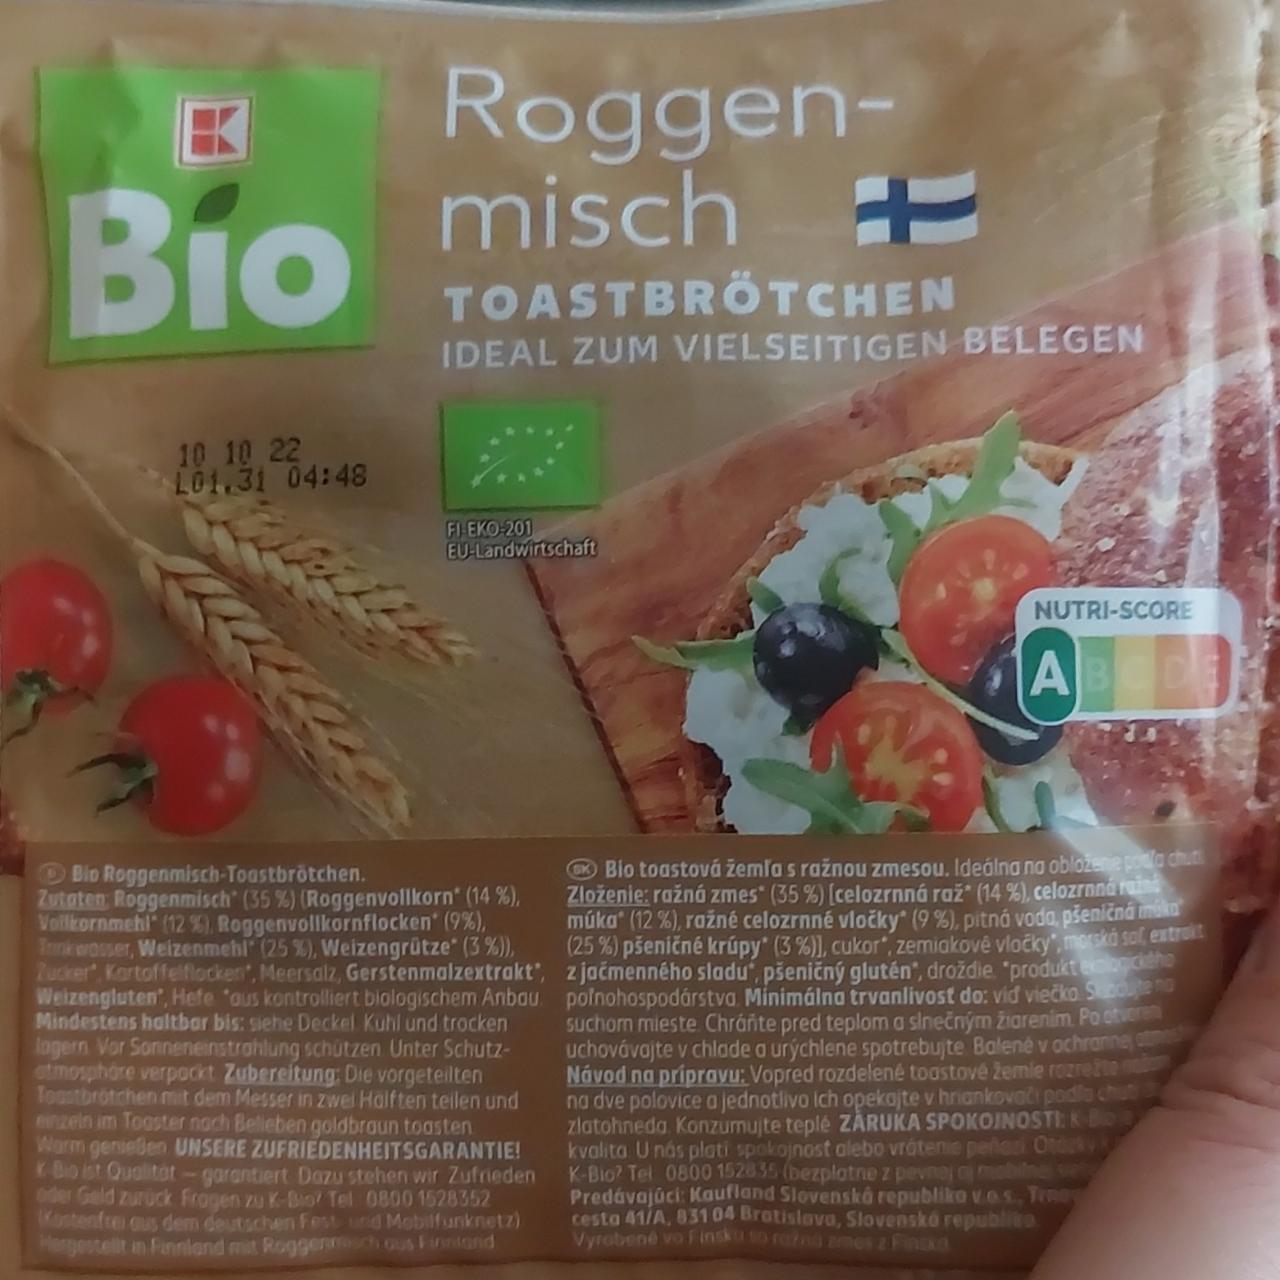 Fotografie - Roggen-misch Toastbrötchen K-Bio